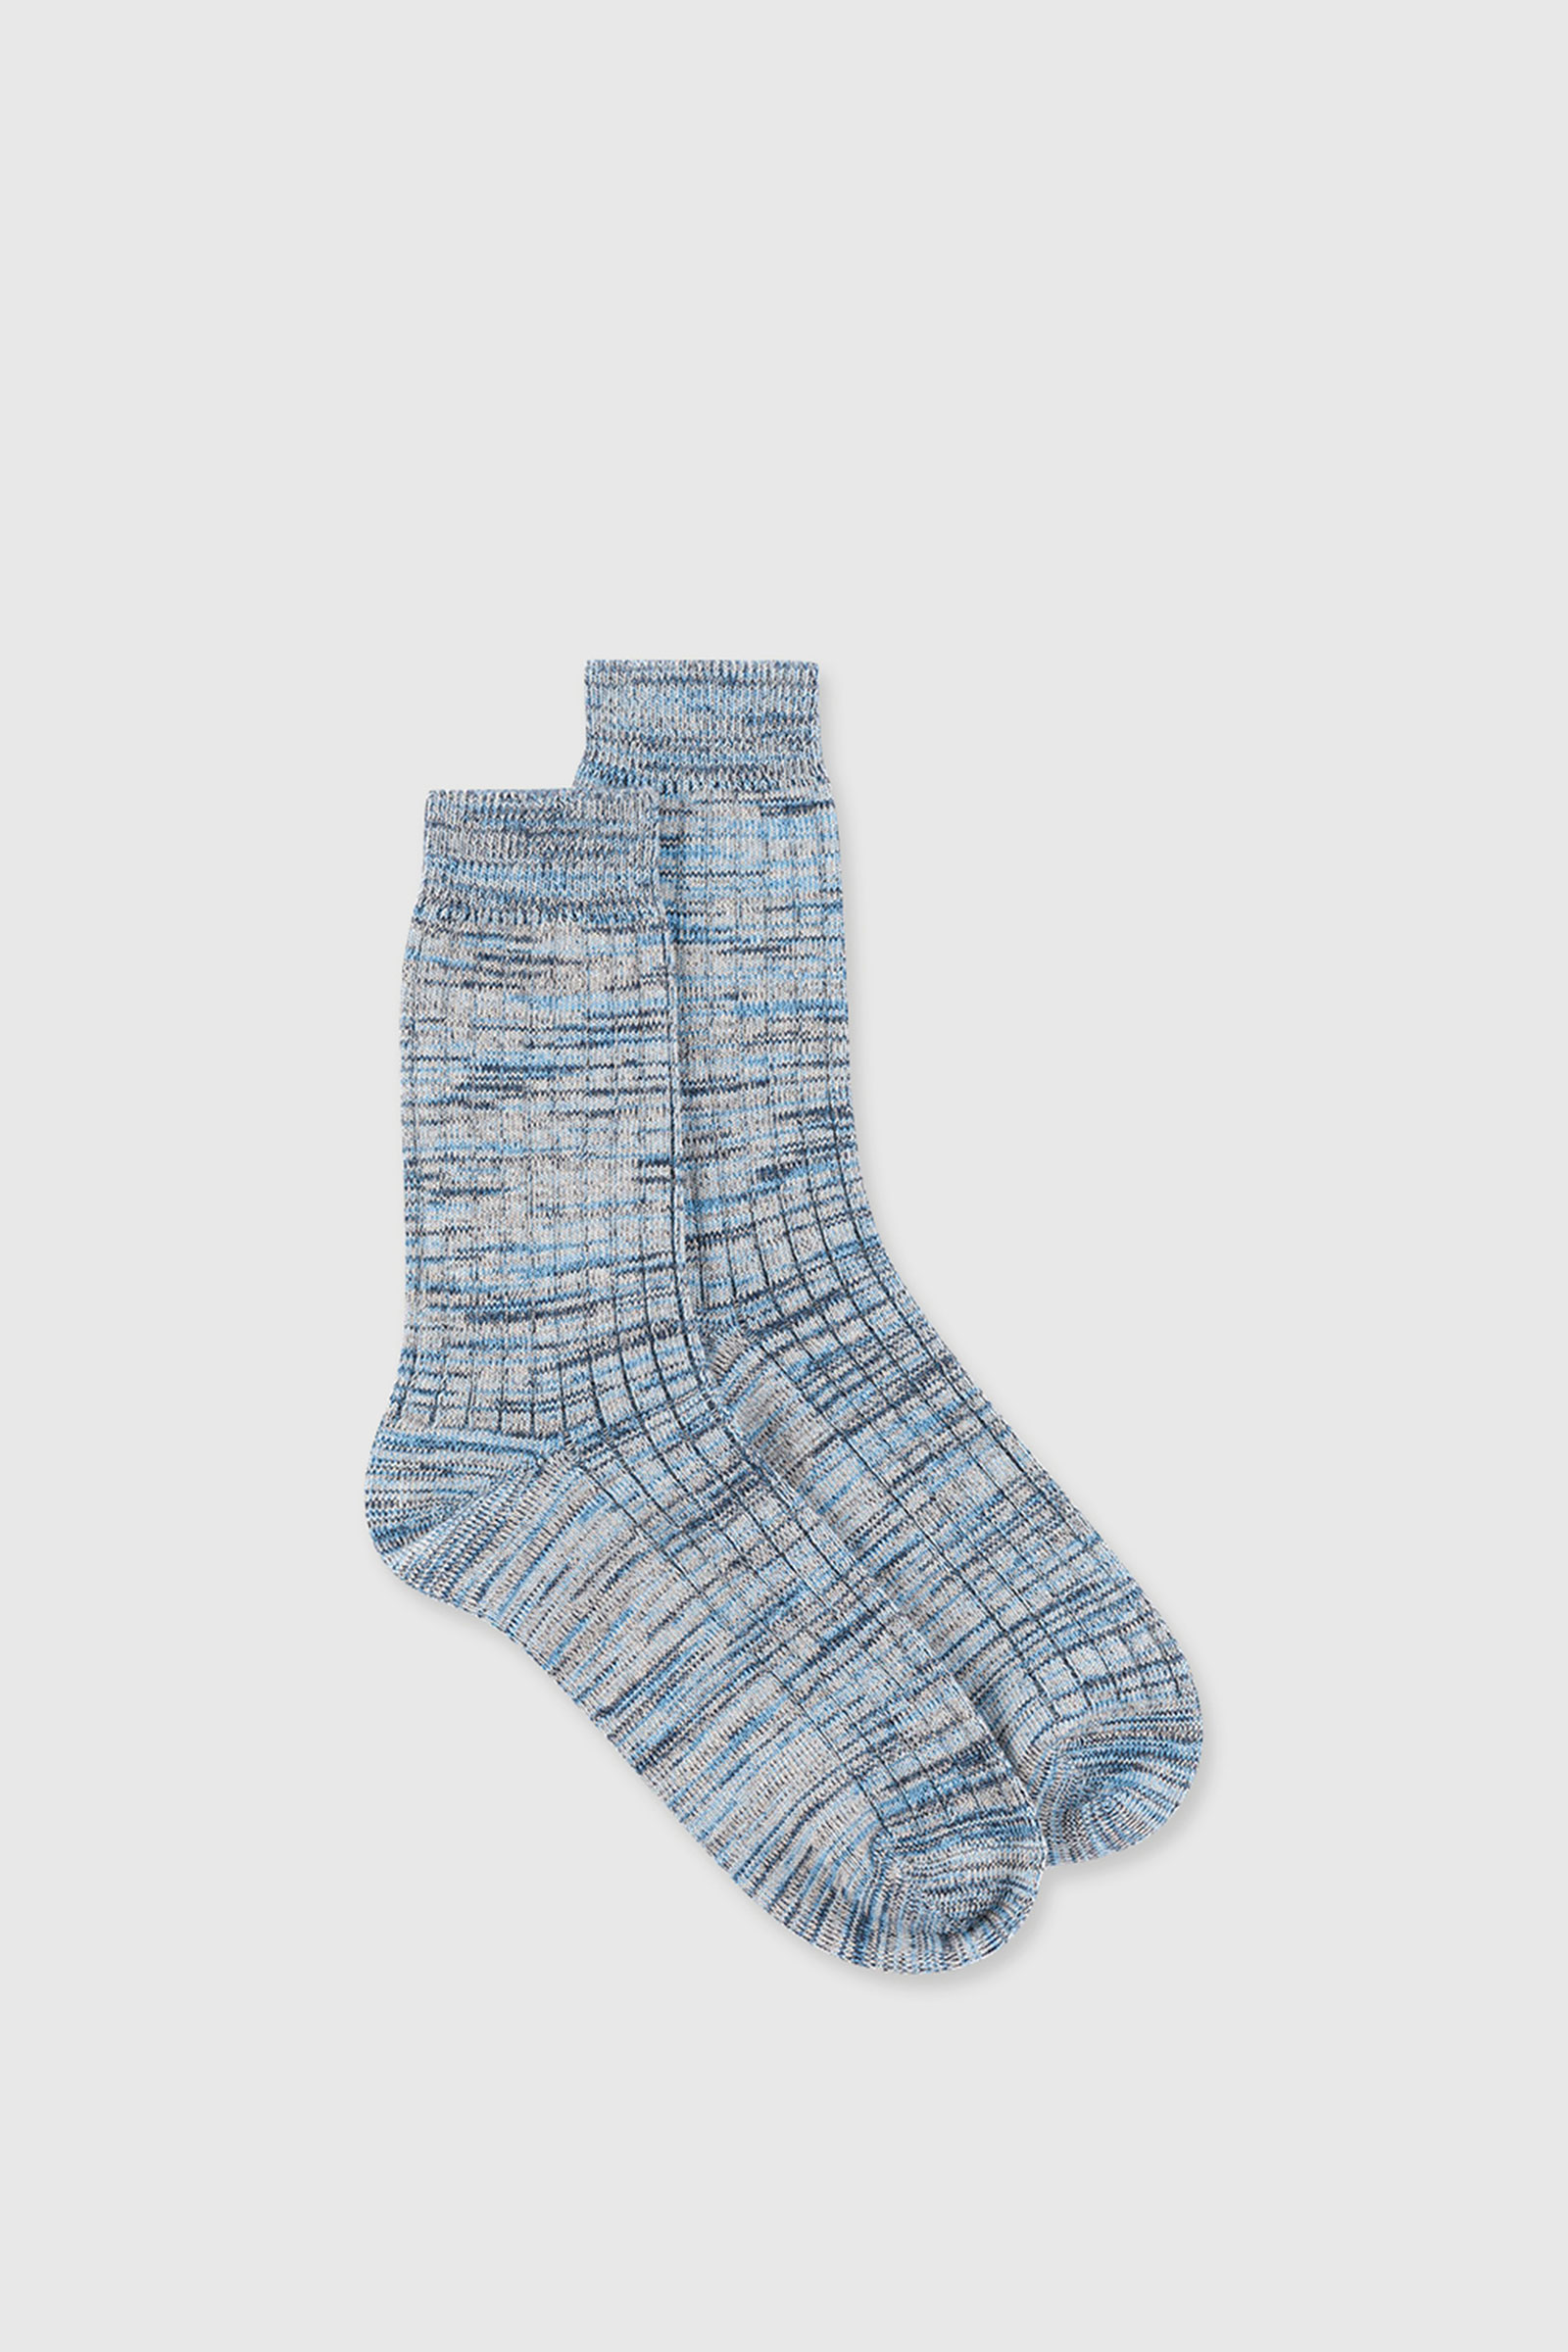 Wood　Bright　Maddie　Wood　socks　twist　blue